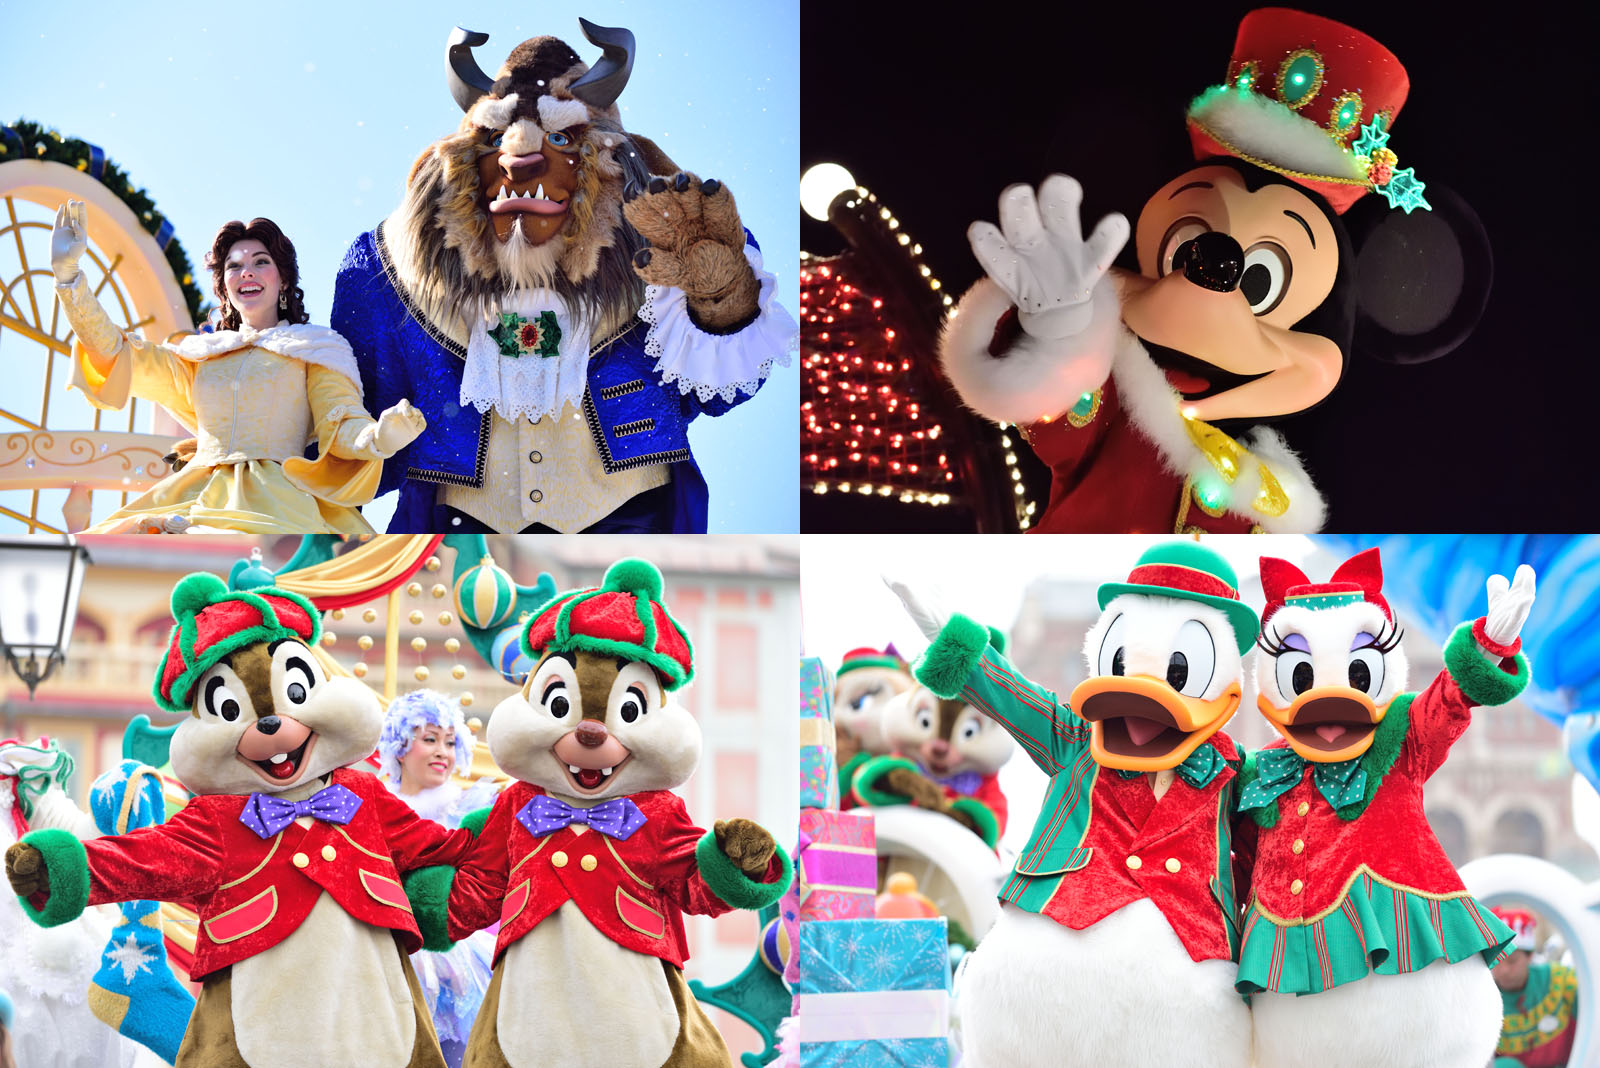 フロート順変更 新衣装でパレード再演 Tdl クリスマス ファンタジー16 詳細発表 Disney Colors Blog